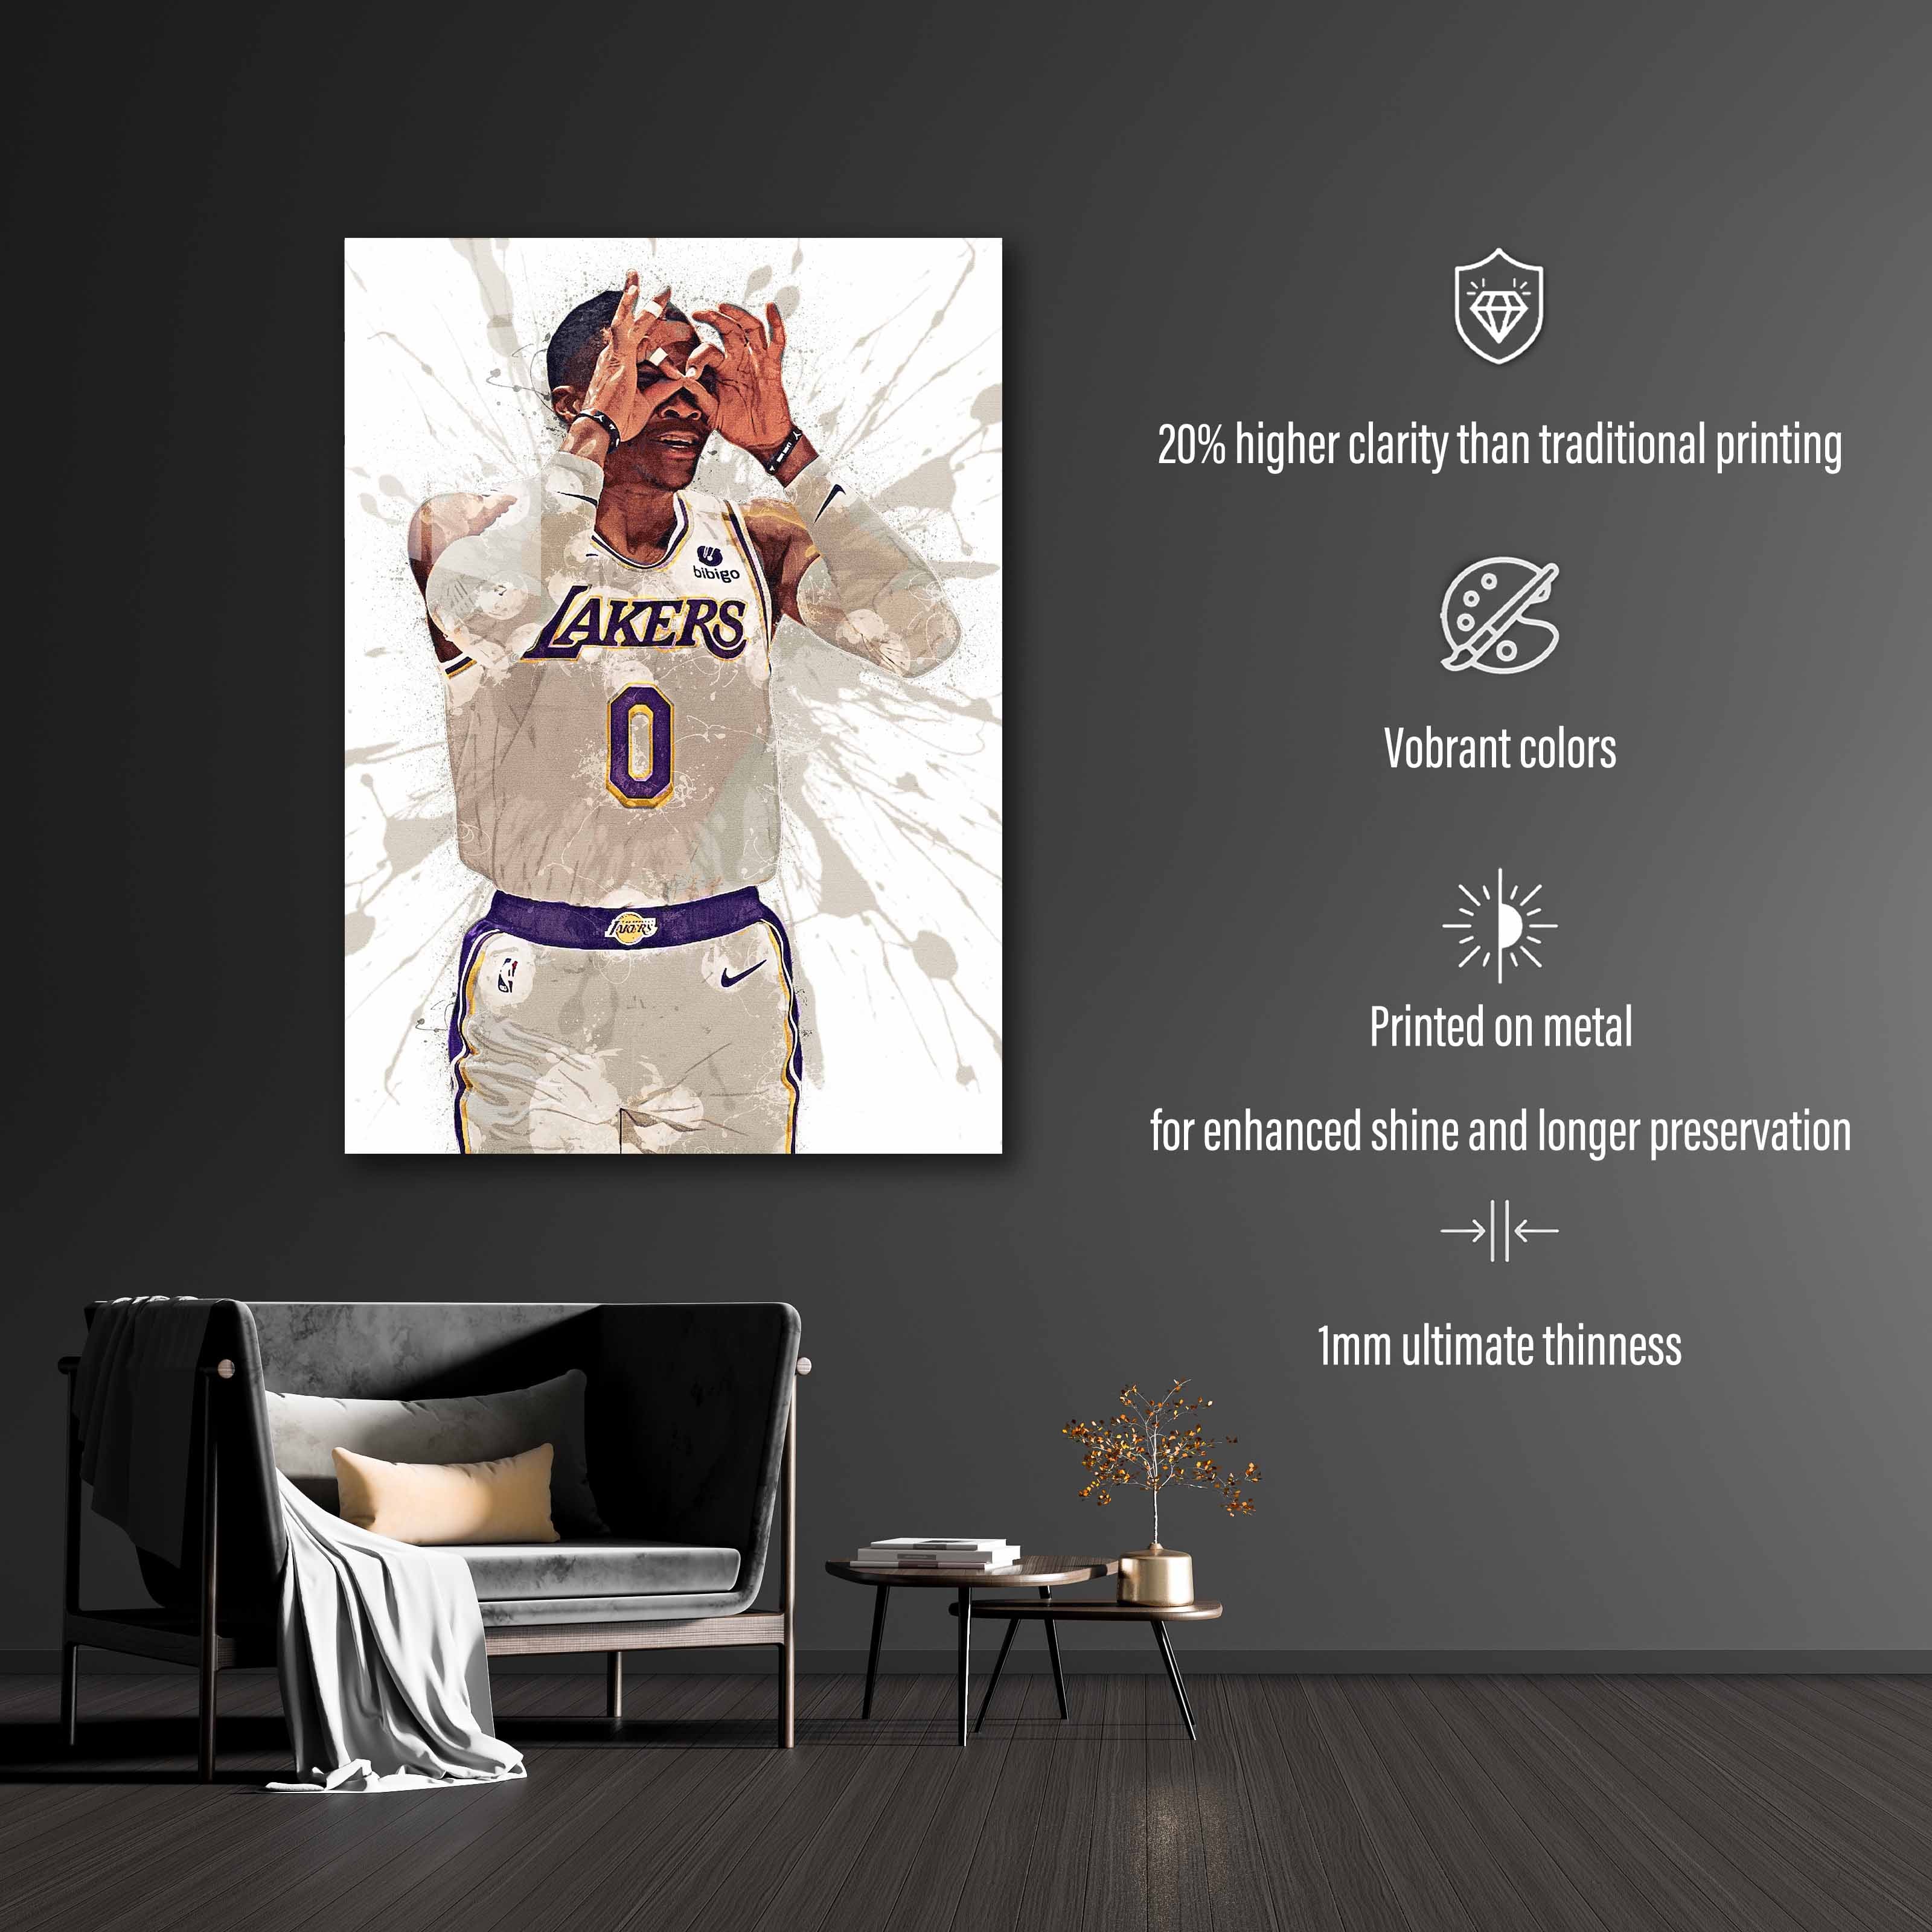 Russell Westbrook LA Lakers-designed by @Hoang Van Thuan